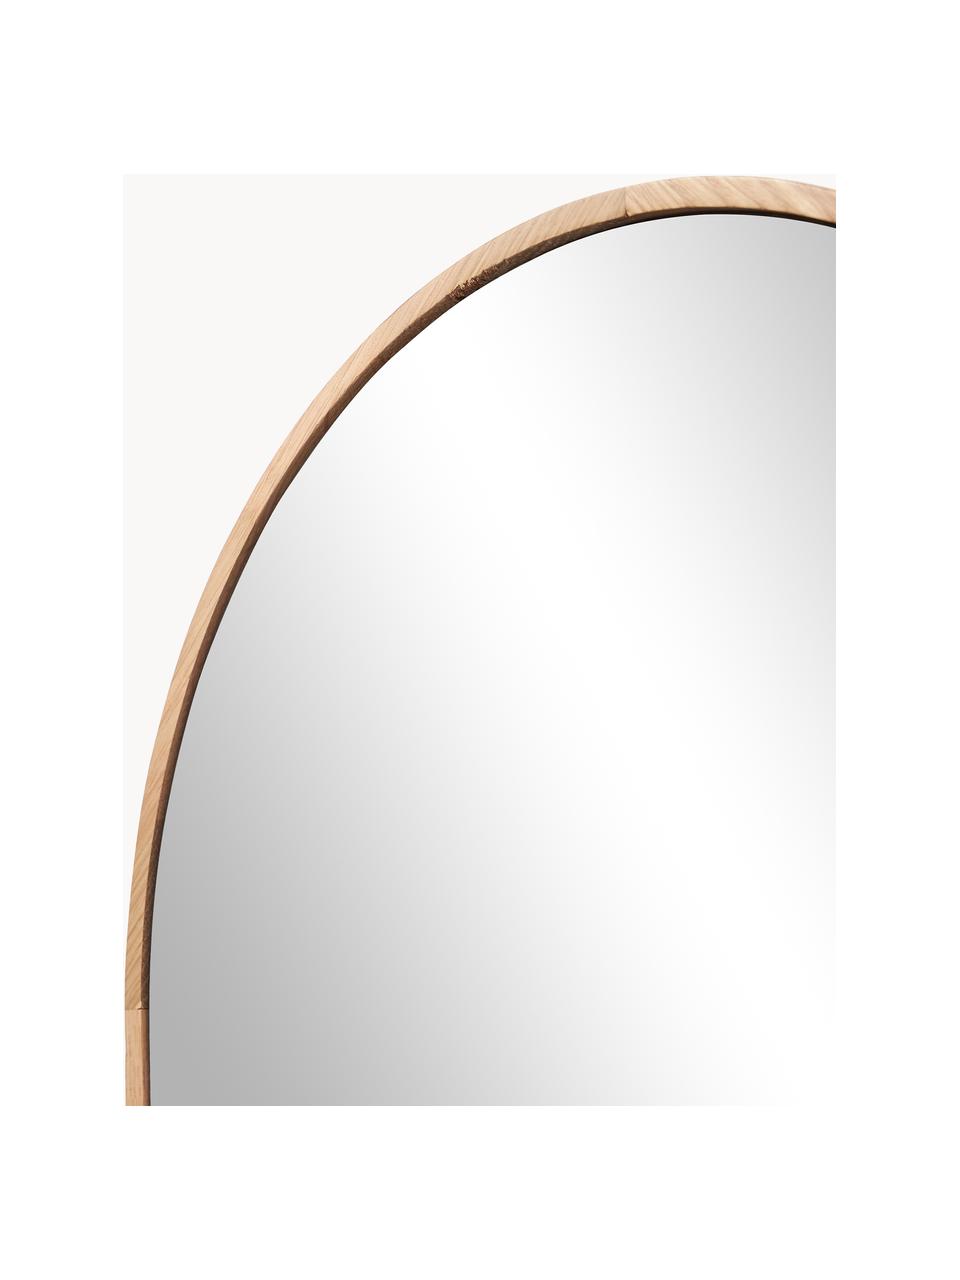 Ovaler Ganzkörperspiegel Avery mit Eichenholzrahmen, Rahmen: Eichenholz, Spiegelfläche: Spiegelglas Dieses Produk, Eichenholz, B 40 x H 140 cm